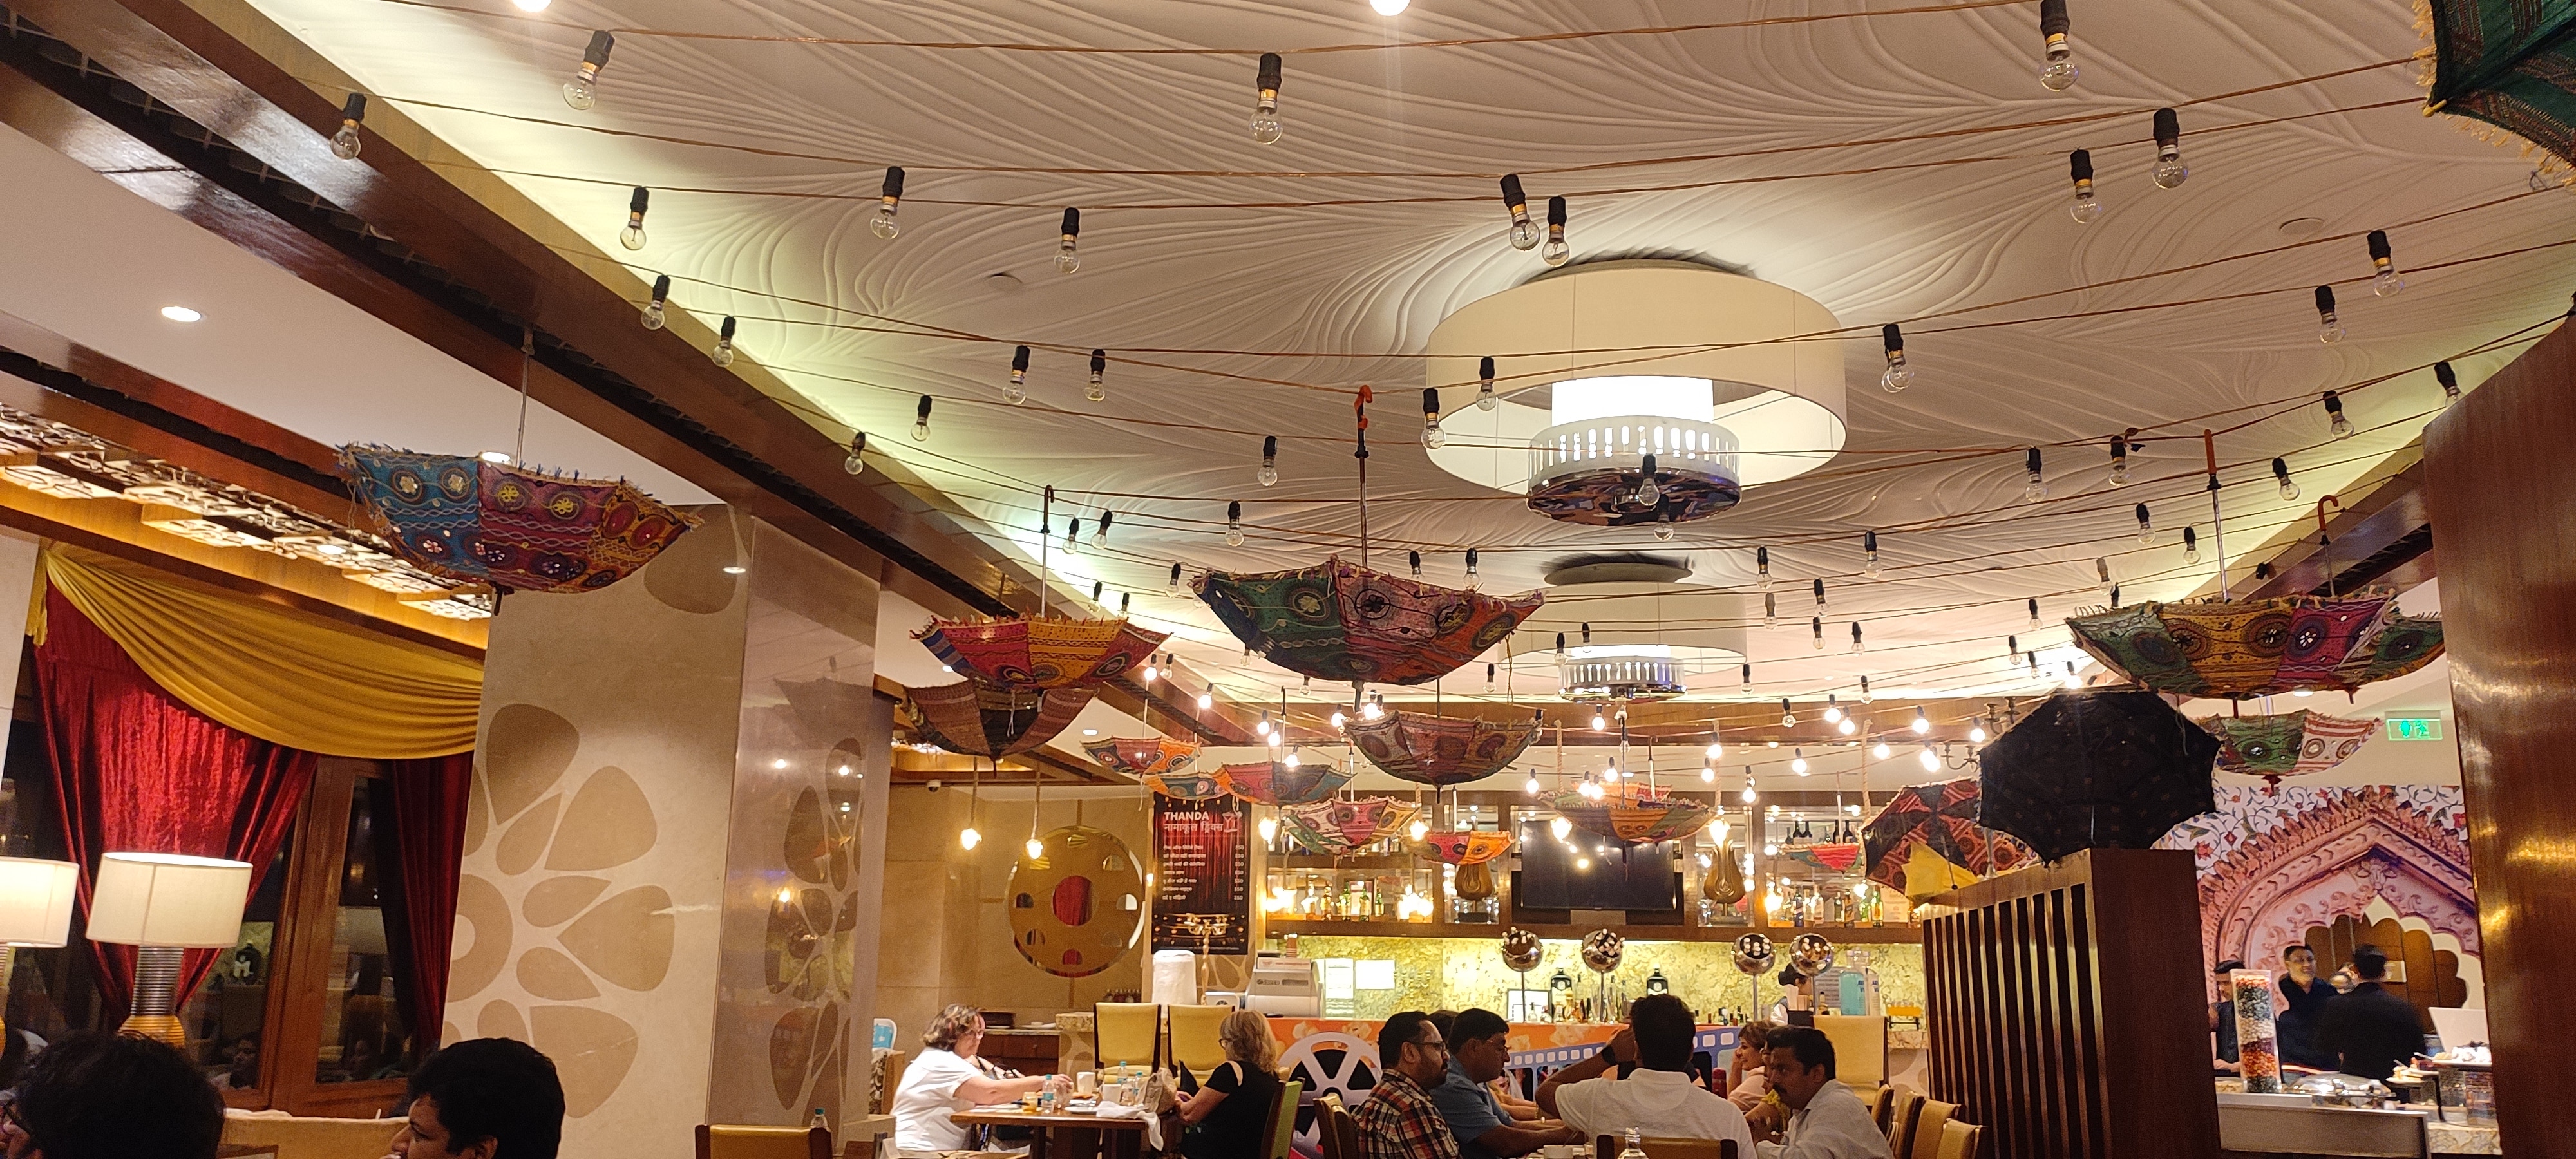 Delhi: अब दिल्ली में मिलेगा लखनवी खाने का जायका, क्राउन प्लाजा होटल में ये कीमत चुकाकर उठा सकते हैं लुत्फ़